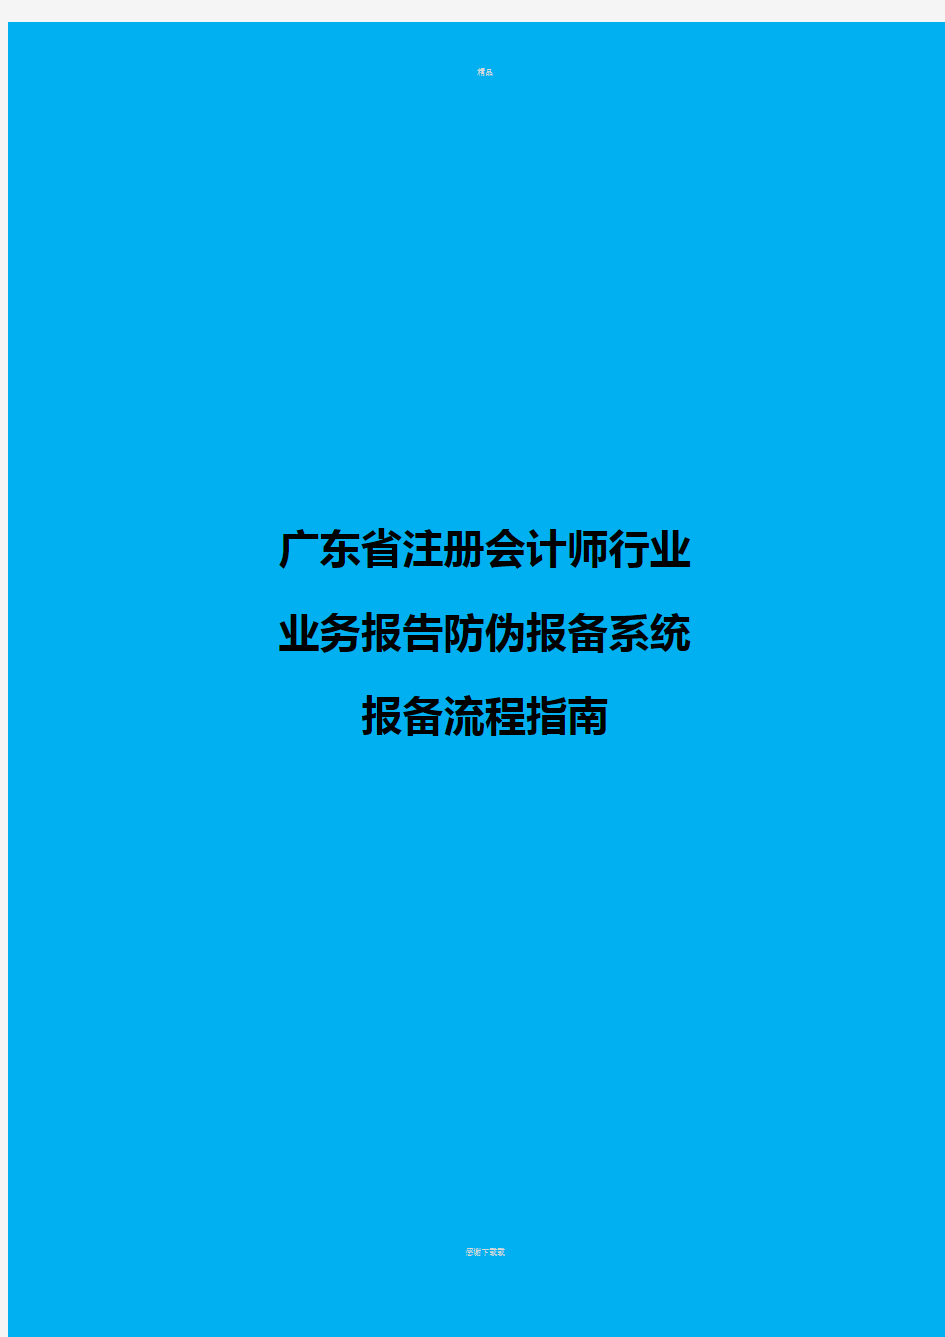 广东省注册会计师行业业务报告防伪报备系统报备流程指南